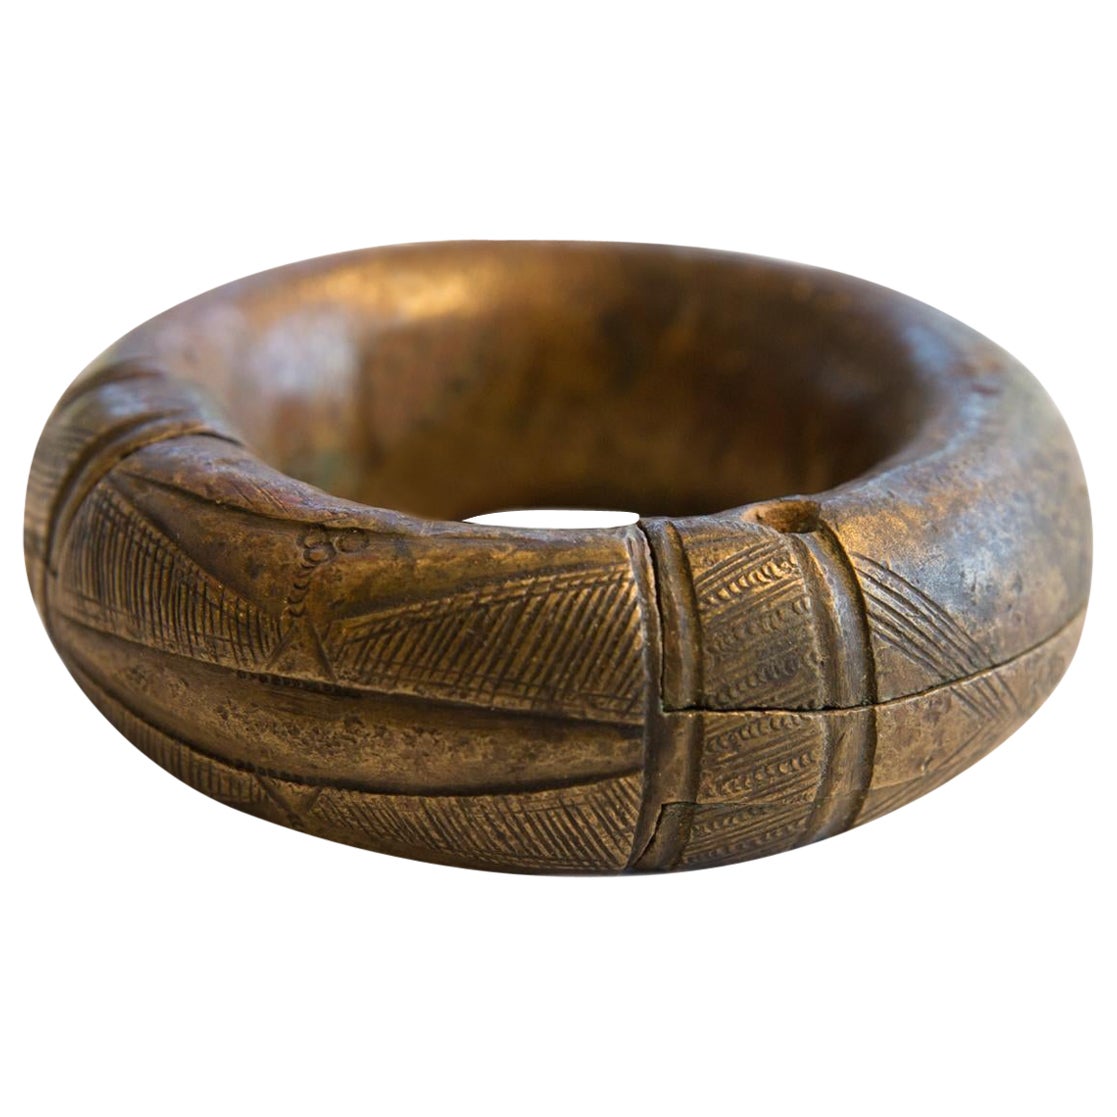 Petit bracelet africain ancien en bronze épais avec détails géométriques